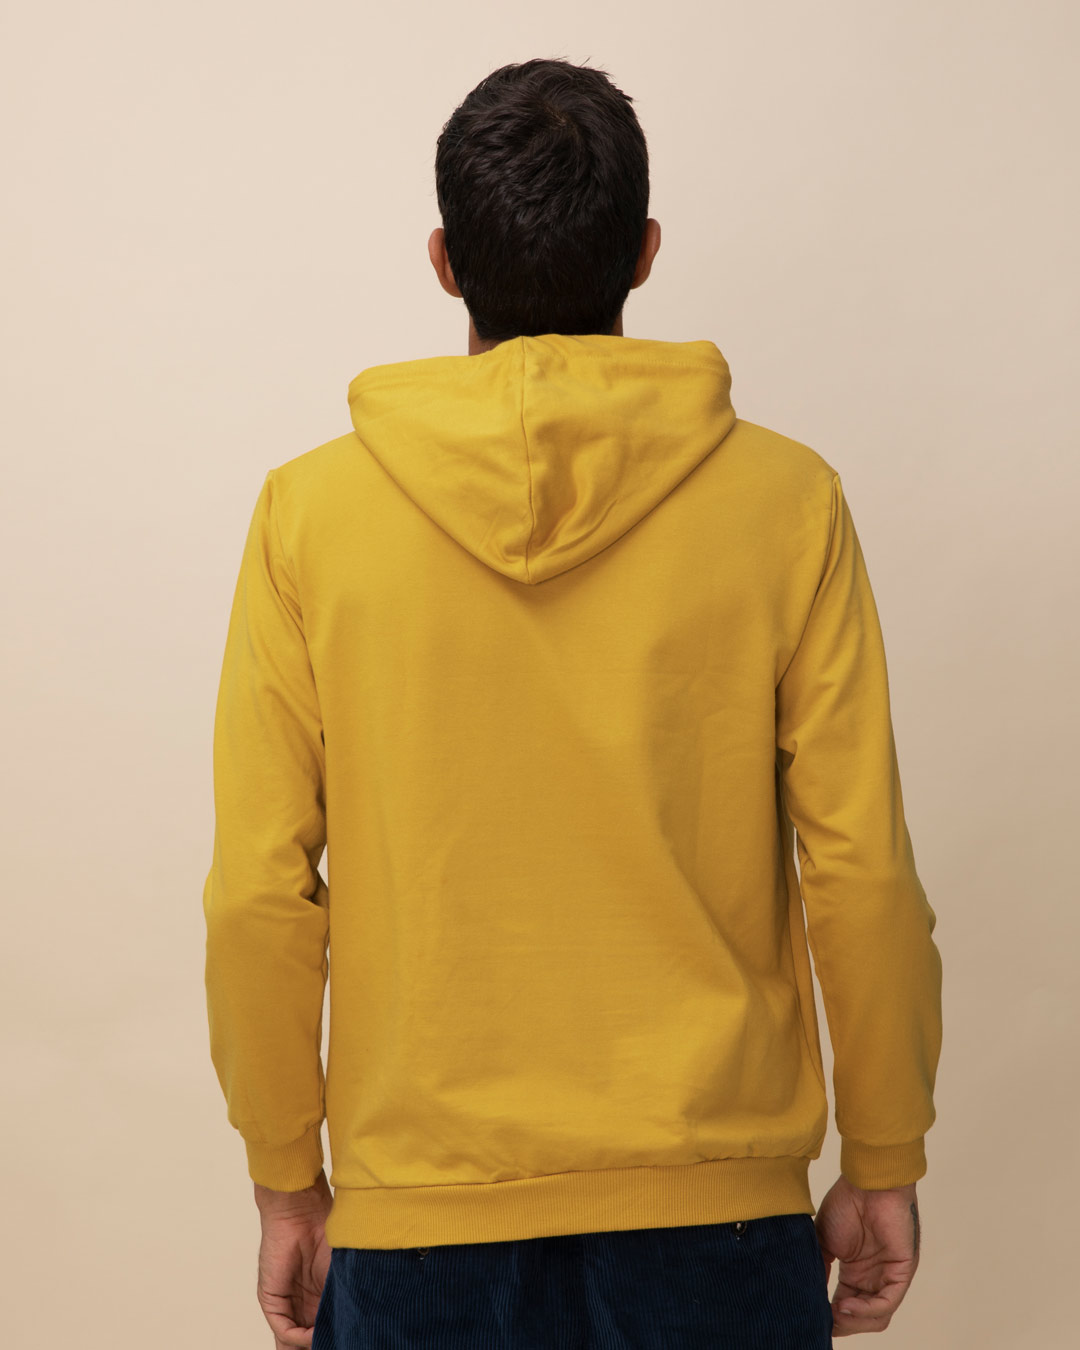 Buy Mustard Yellow Fleece Hoodies Online at Bewakoof